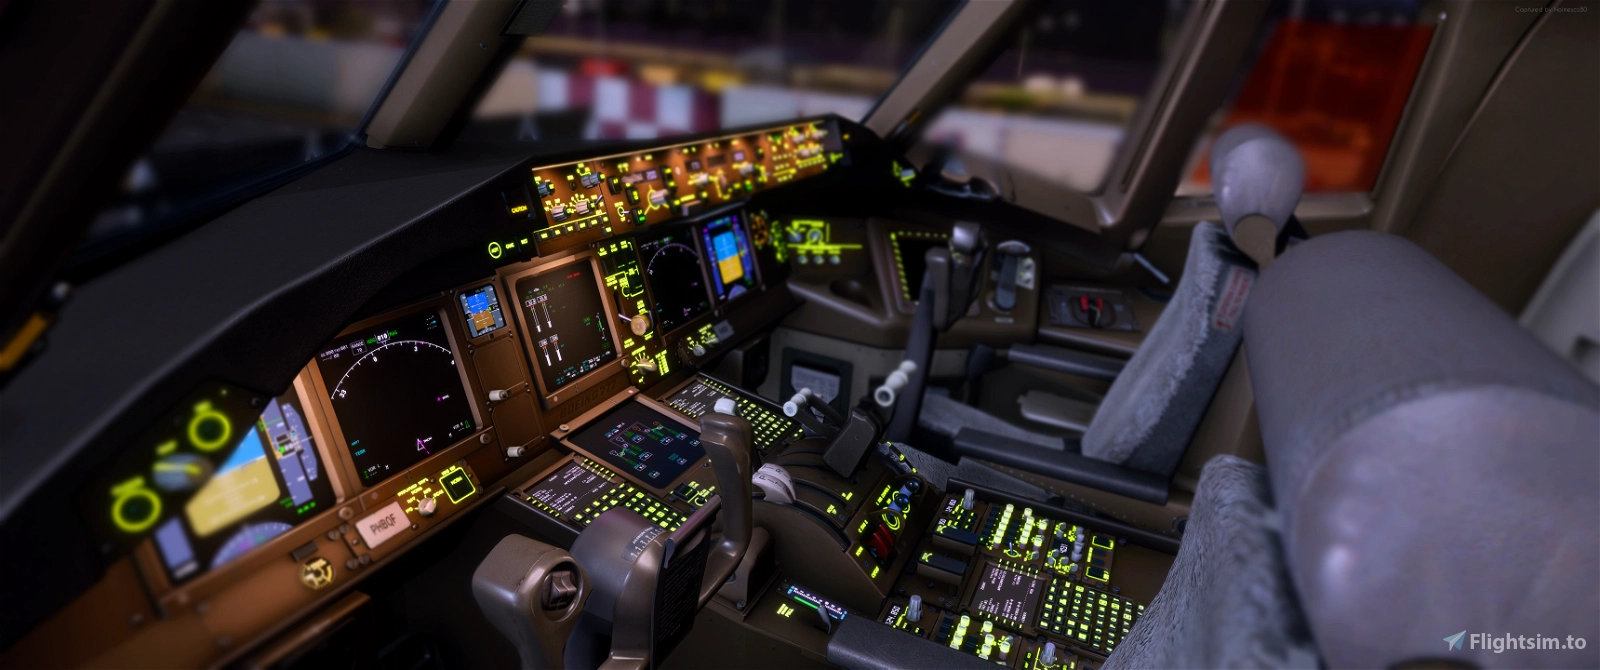 Fly Away Simulation - Freeware Flight Sim Add-ons, News & Community